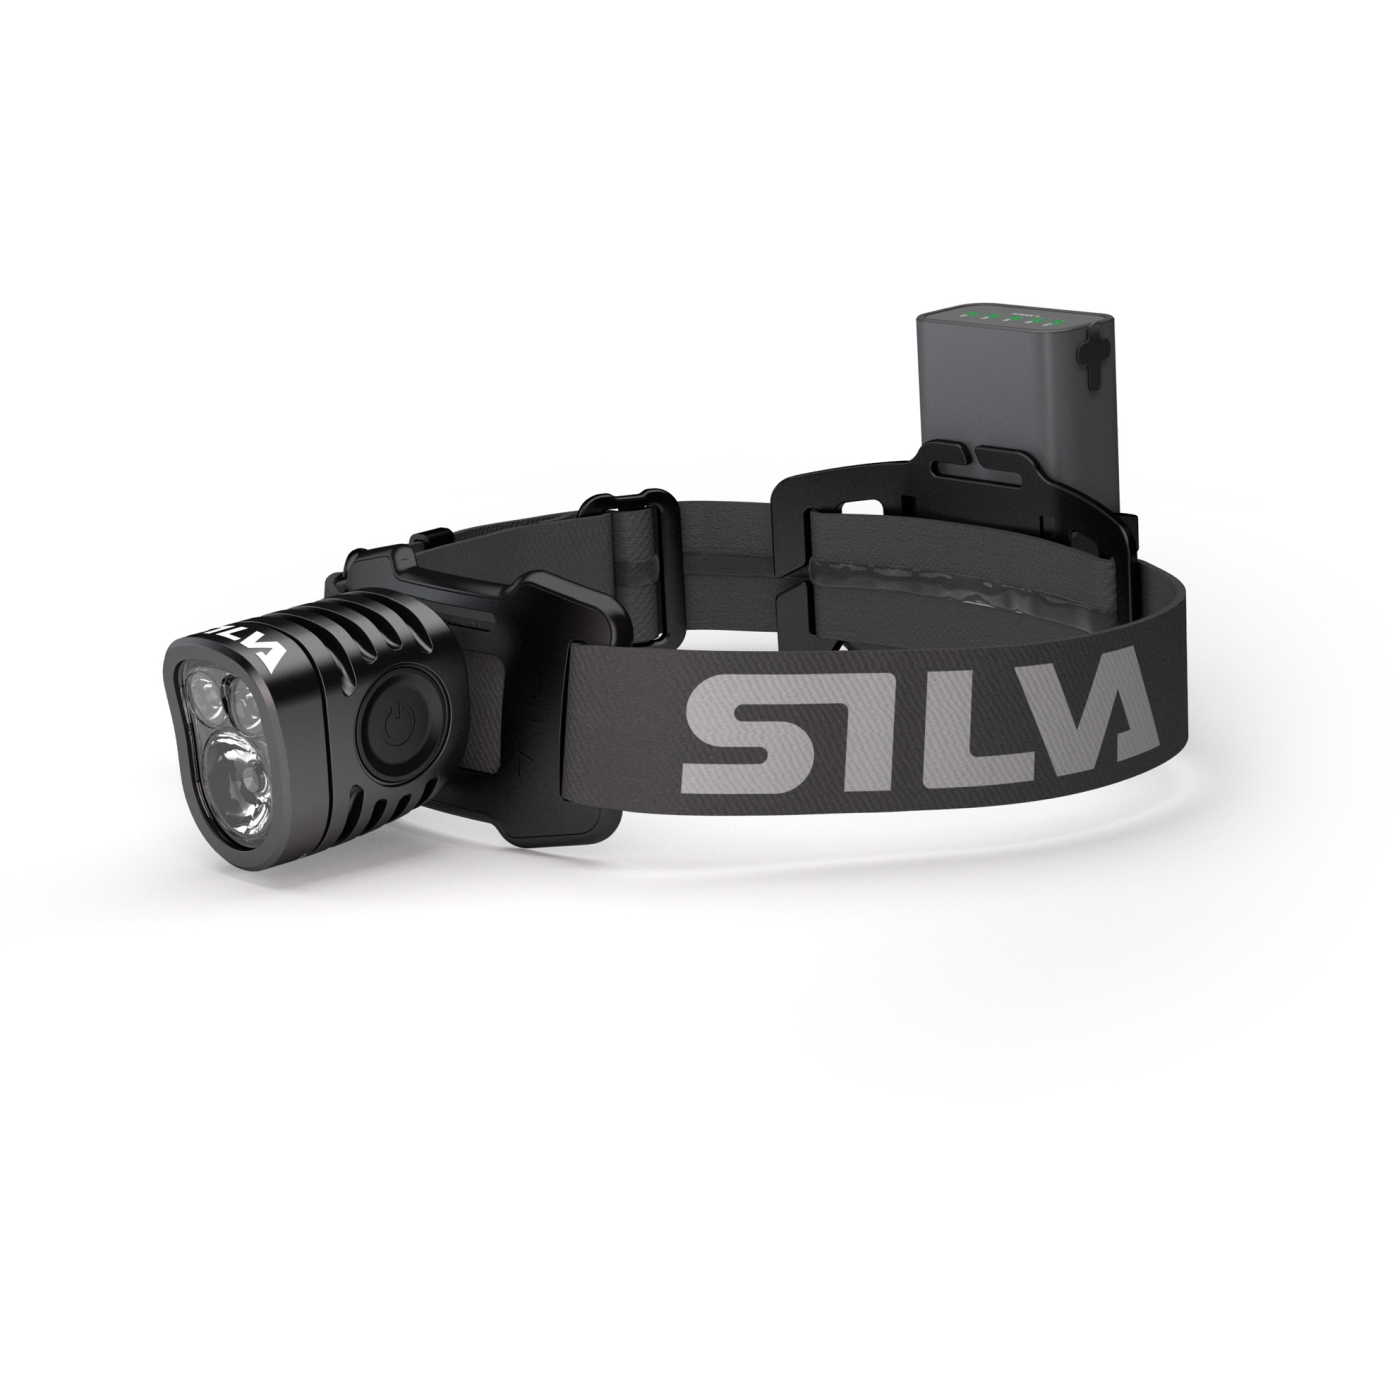 Silva Exceed 4R 2300 Lumen Rechargeable Headlamp